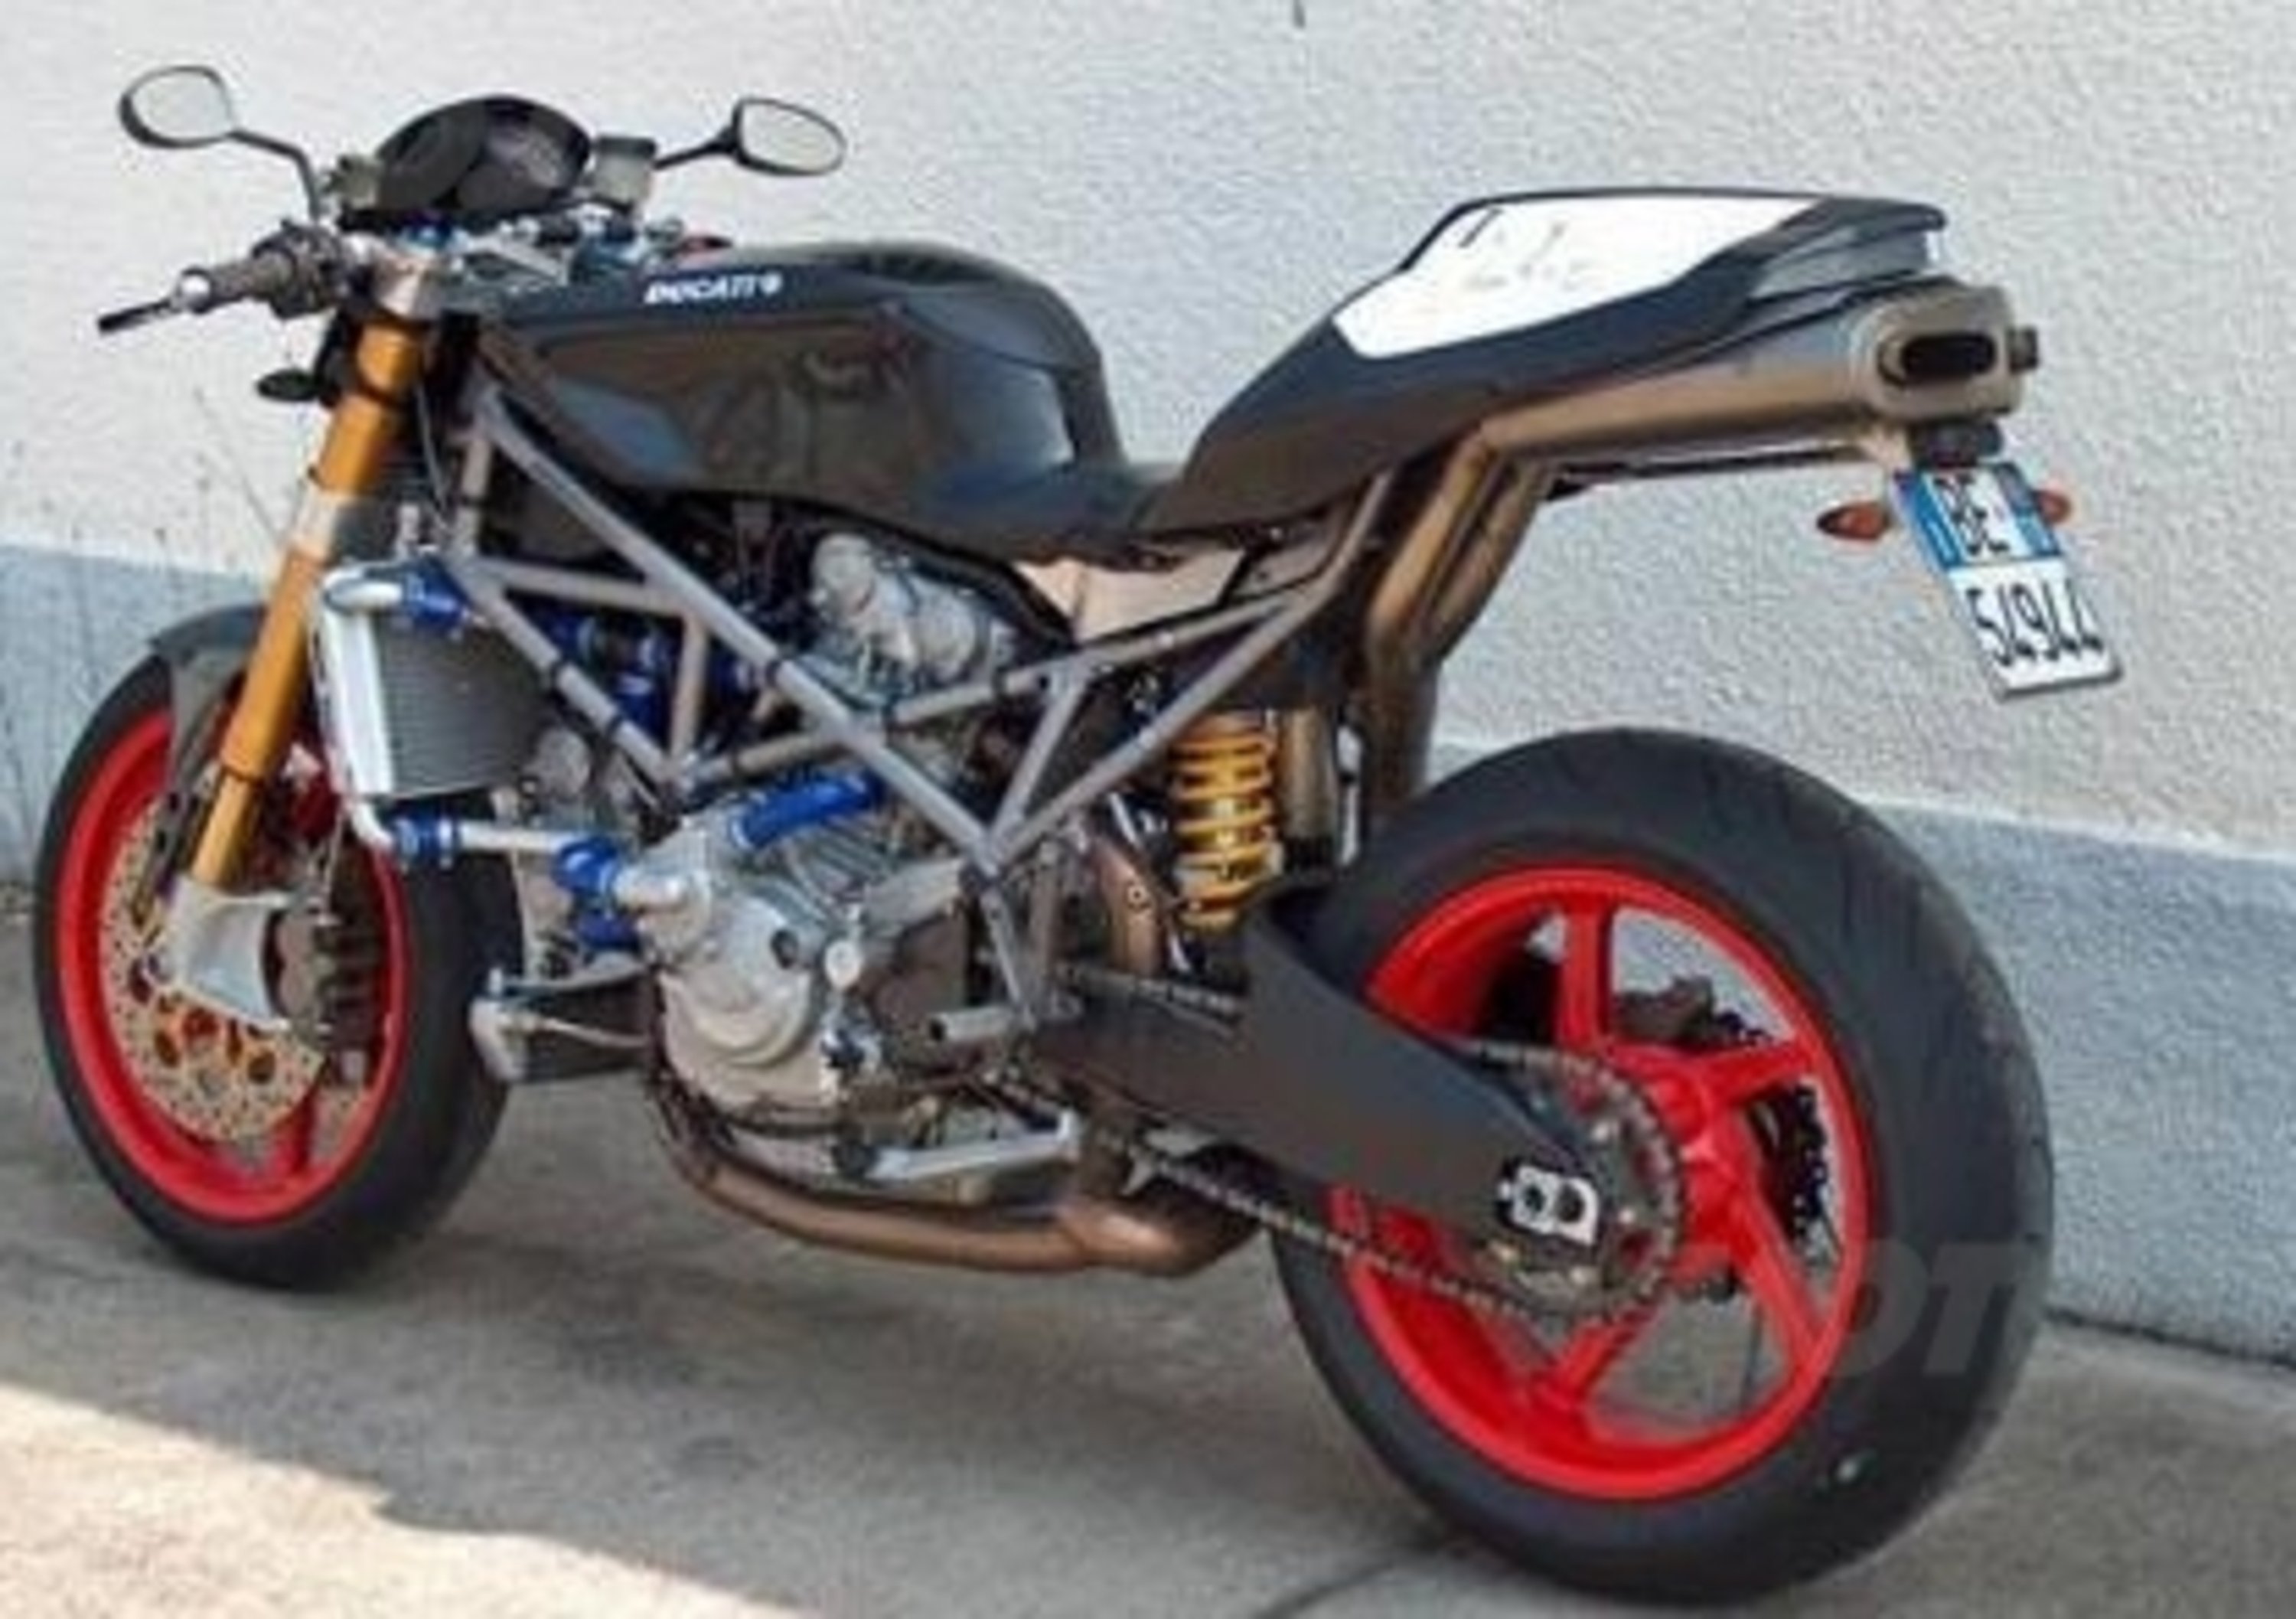 Le Strane di Moto.it: Ducati S4 